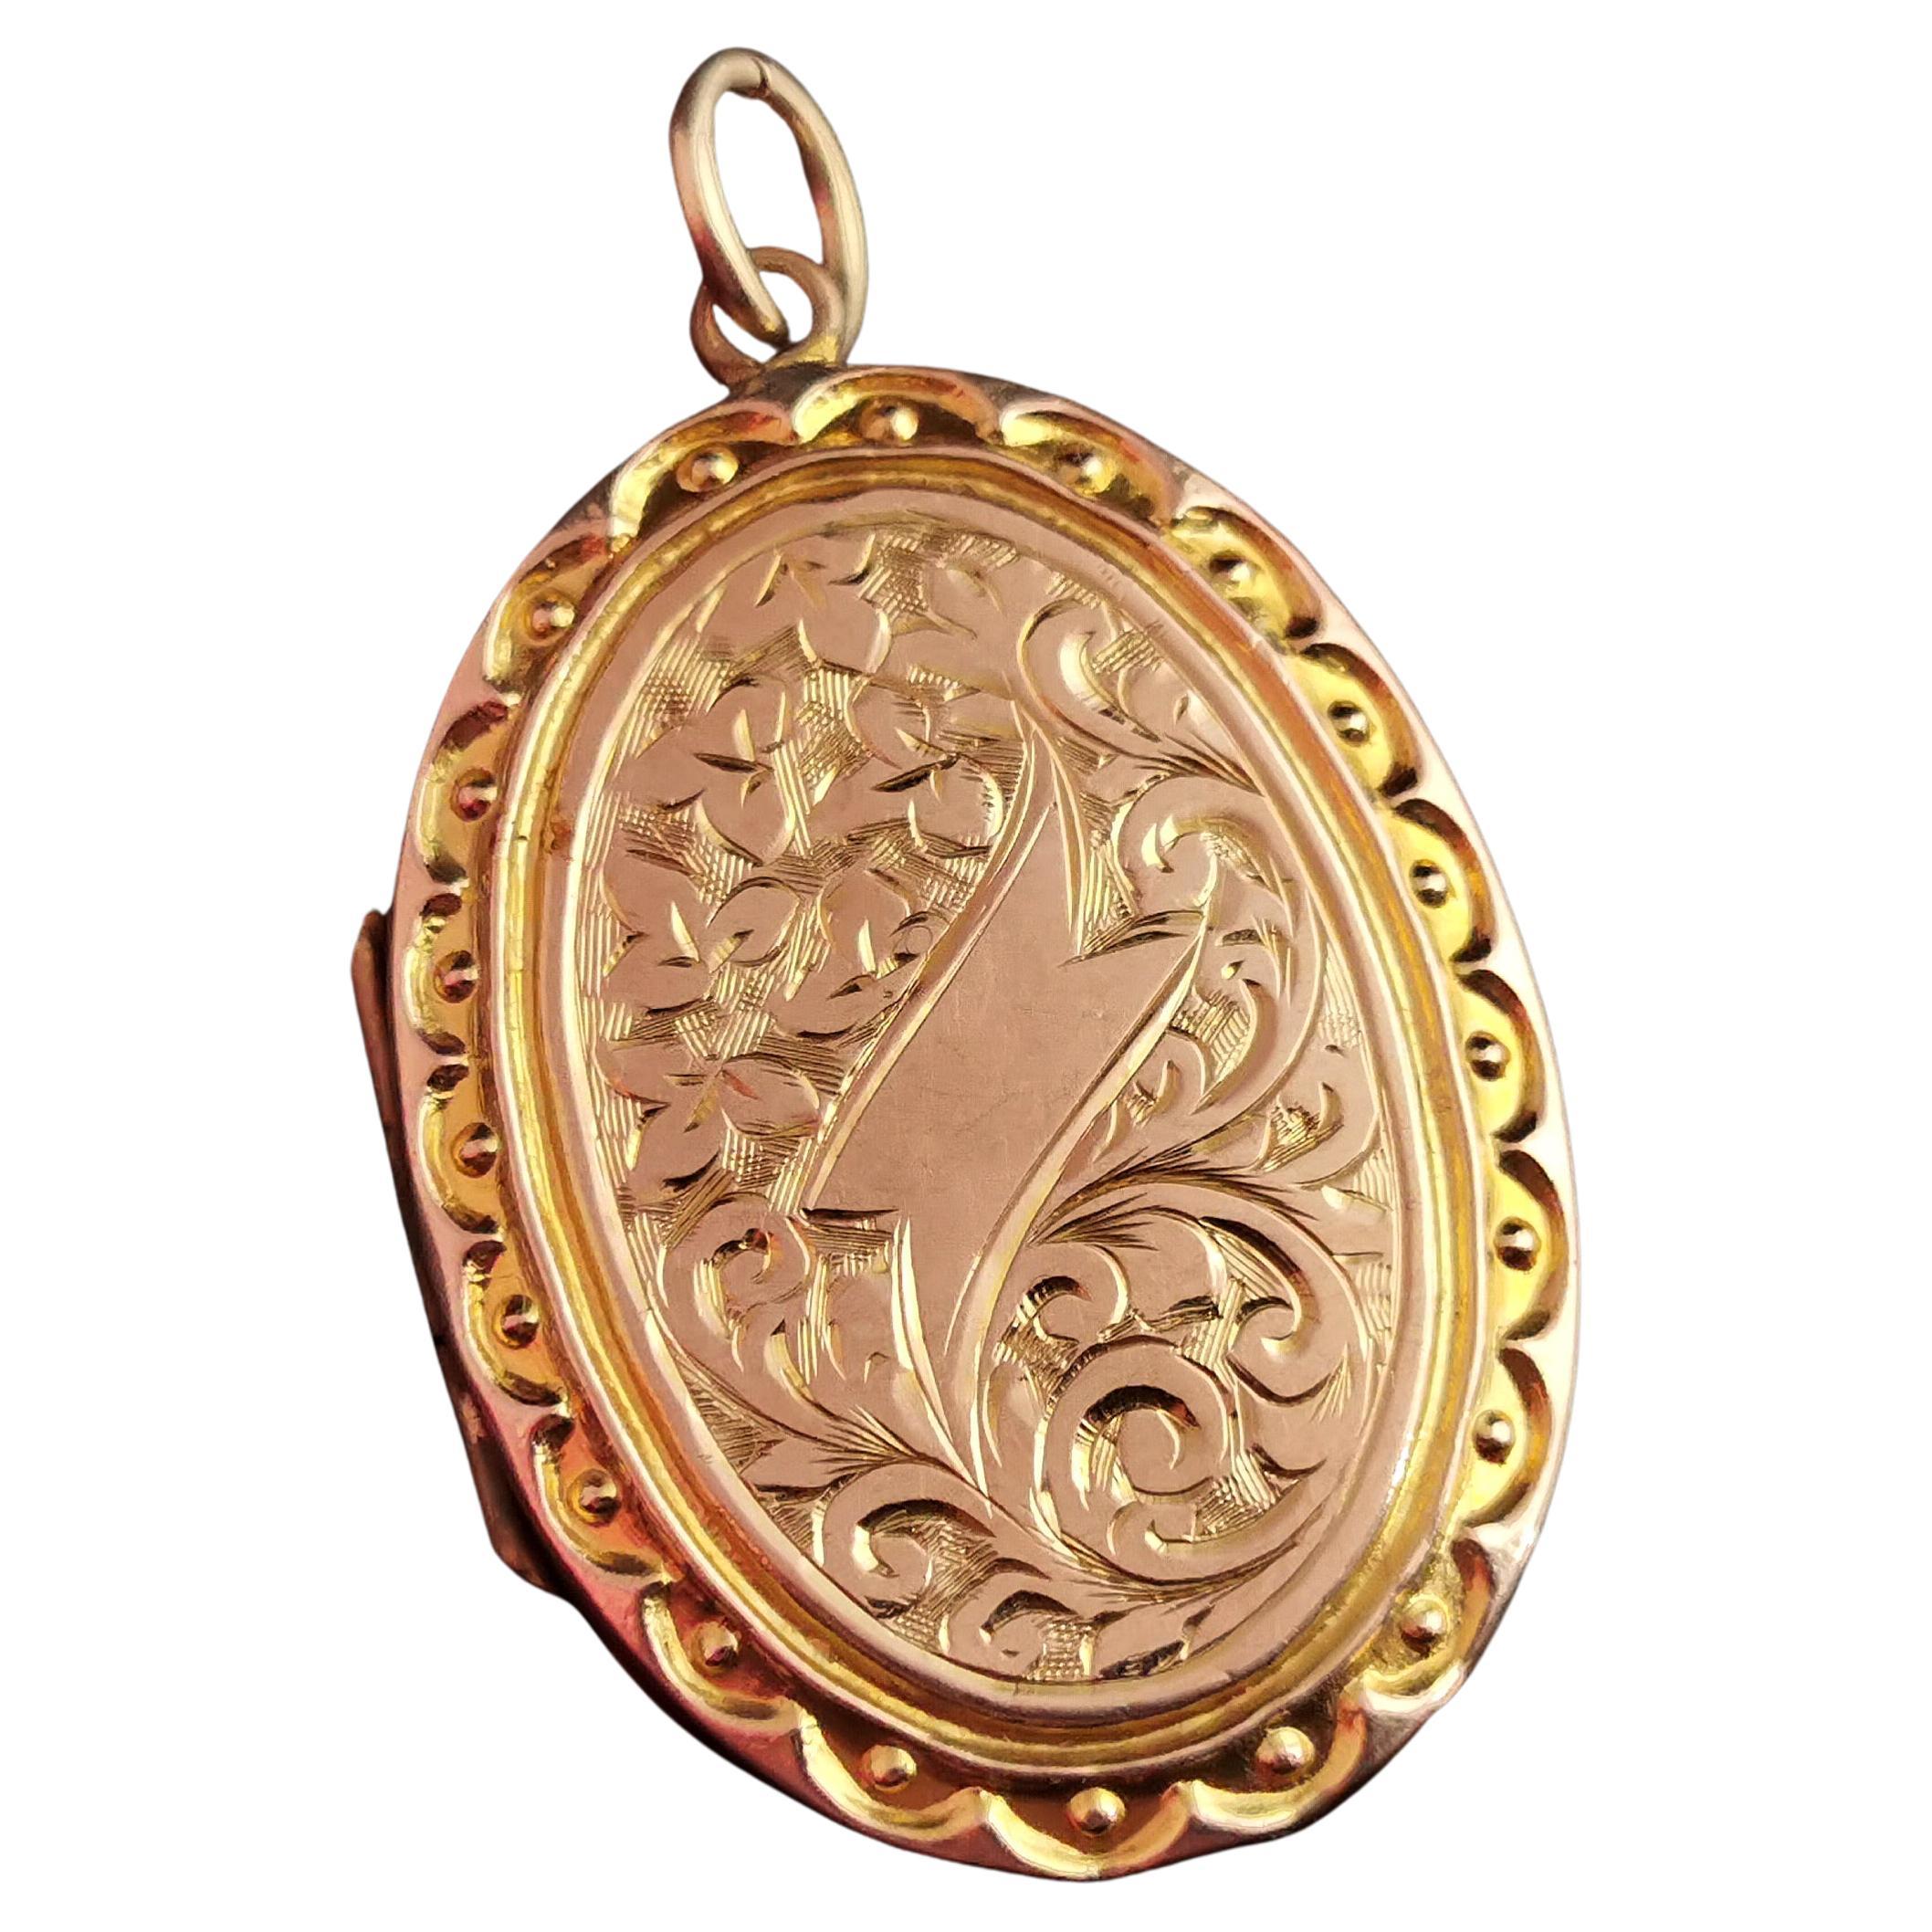 Antique Edwardian 9k gold front and back locket pendant, engraved 